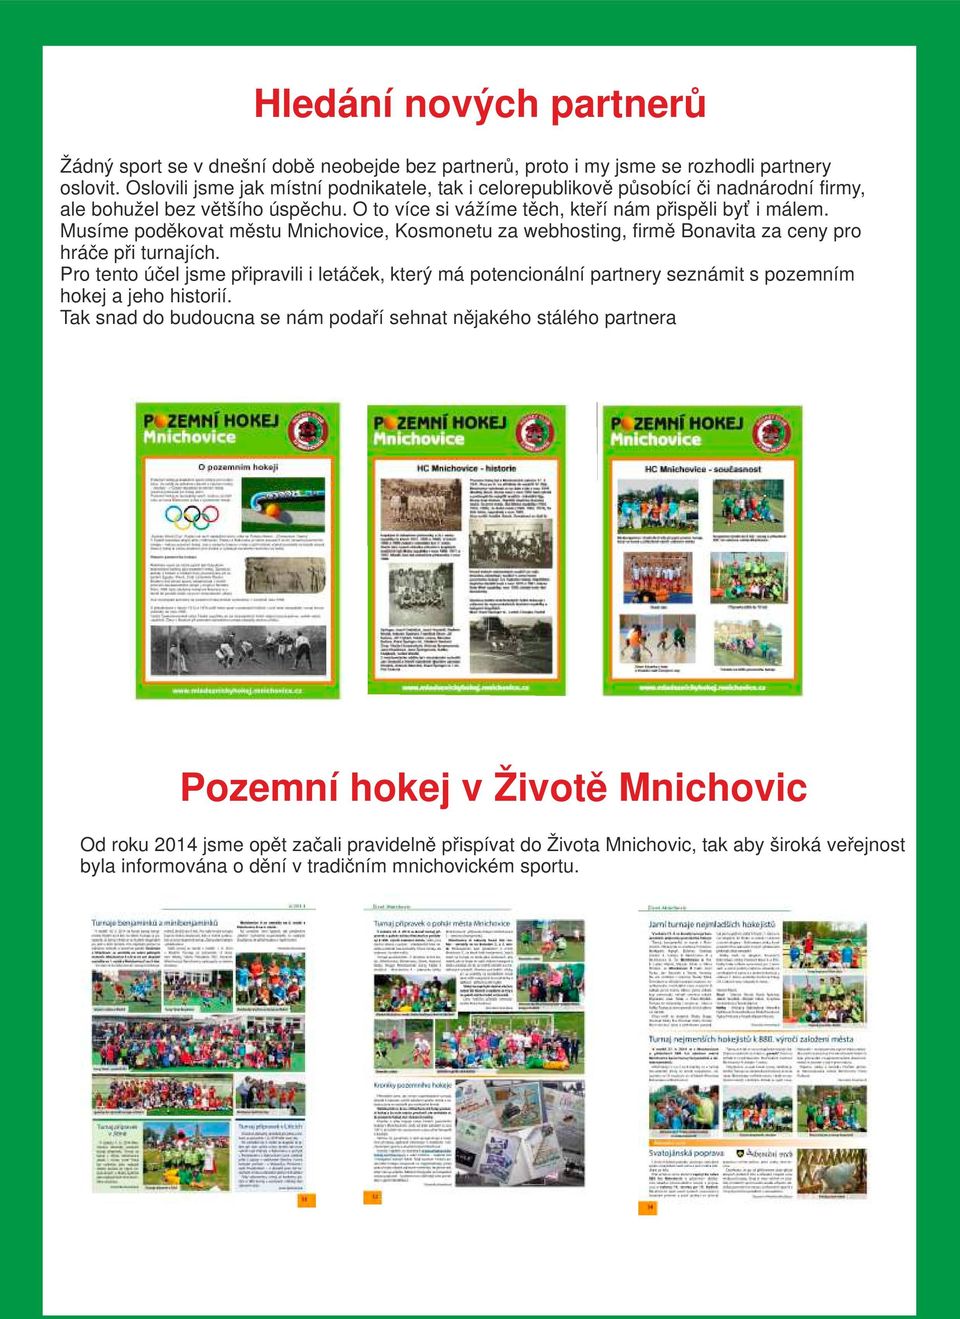 Musíme poděkovat městu Mnichovice, Kosmonetu za webhosting, firmě Bonavita za ceny pro hráče při turnajích.